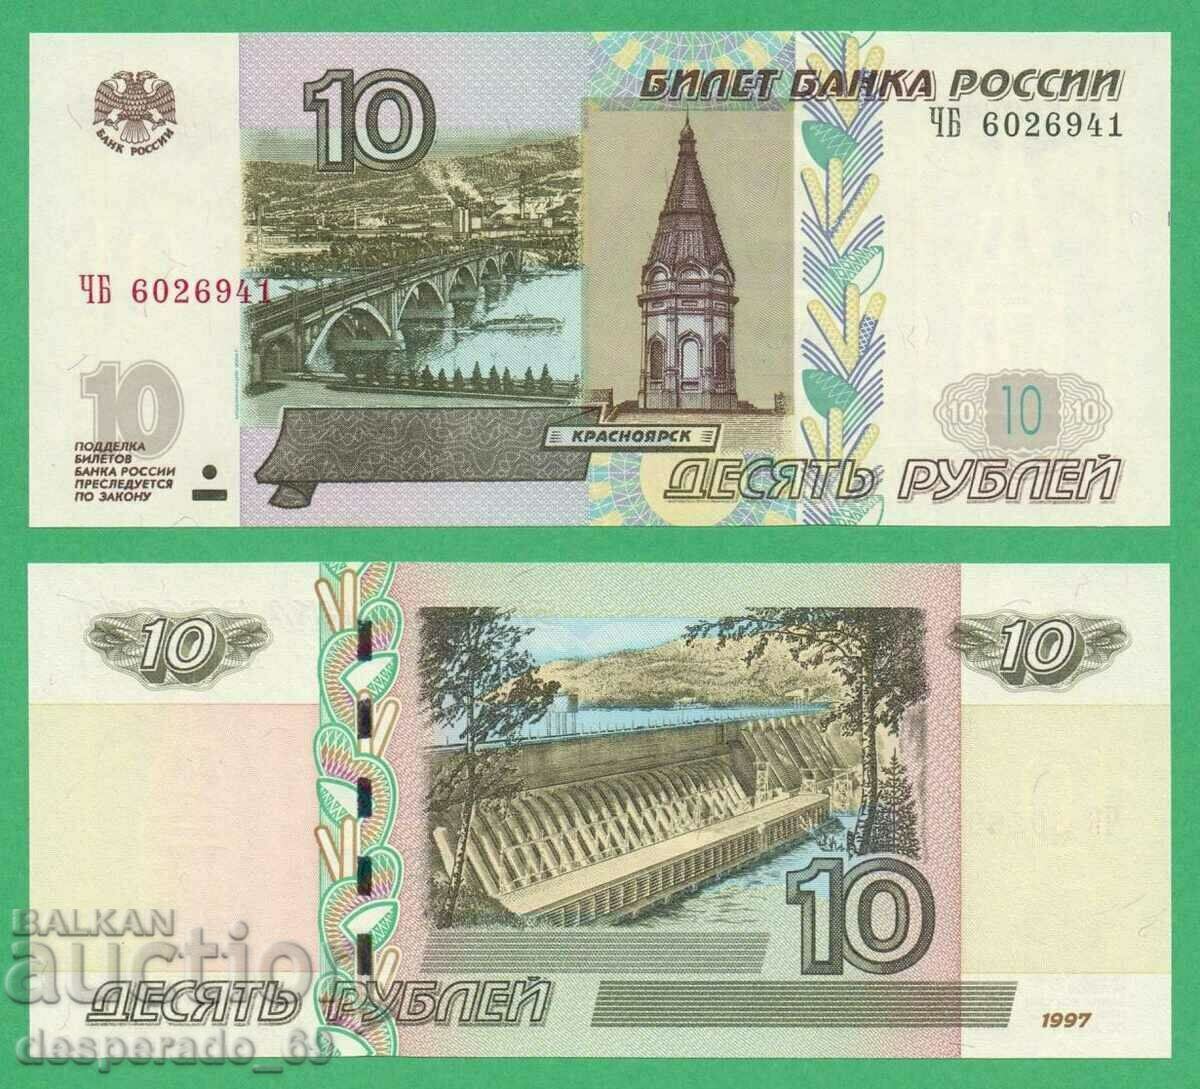 (¯`'•.¸ RUSSIA 10 rubles 1997 (2004) UNC ¸.•'´¯)